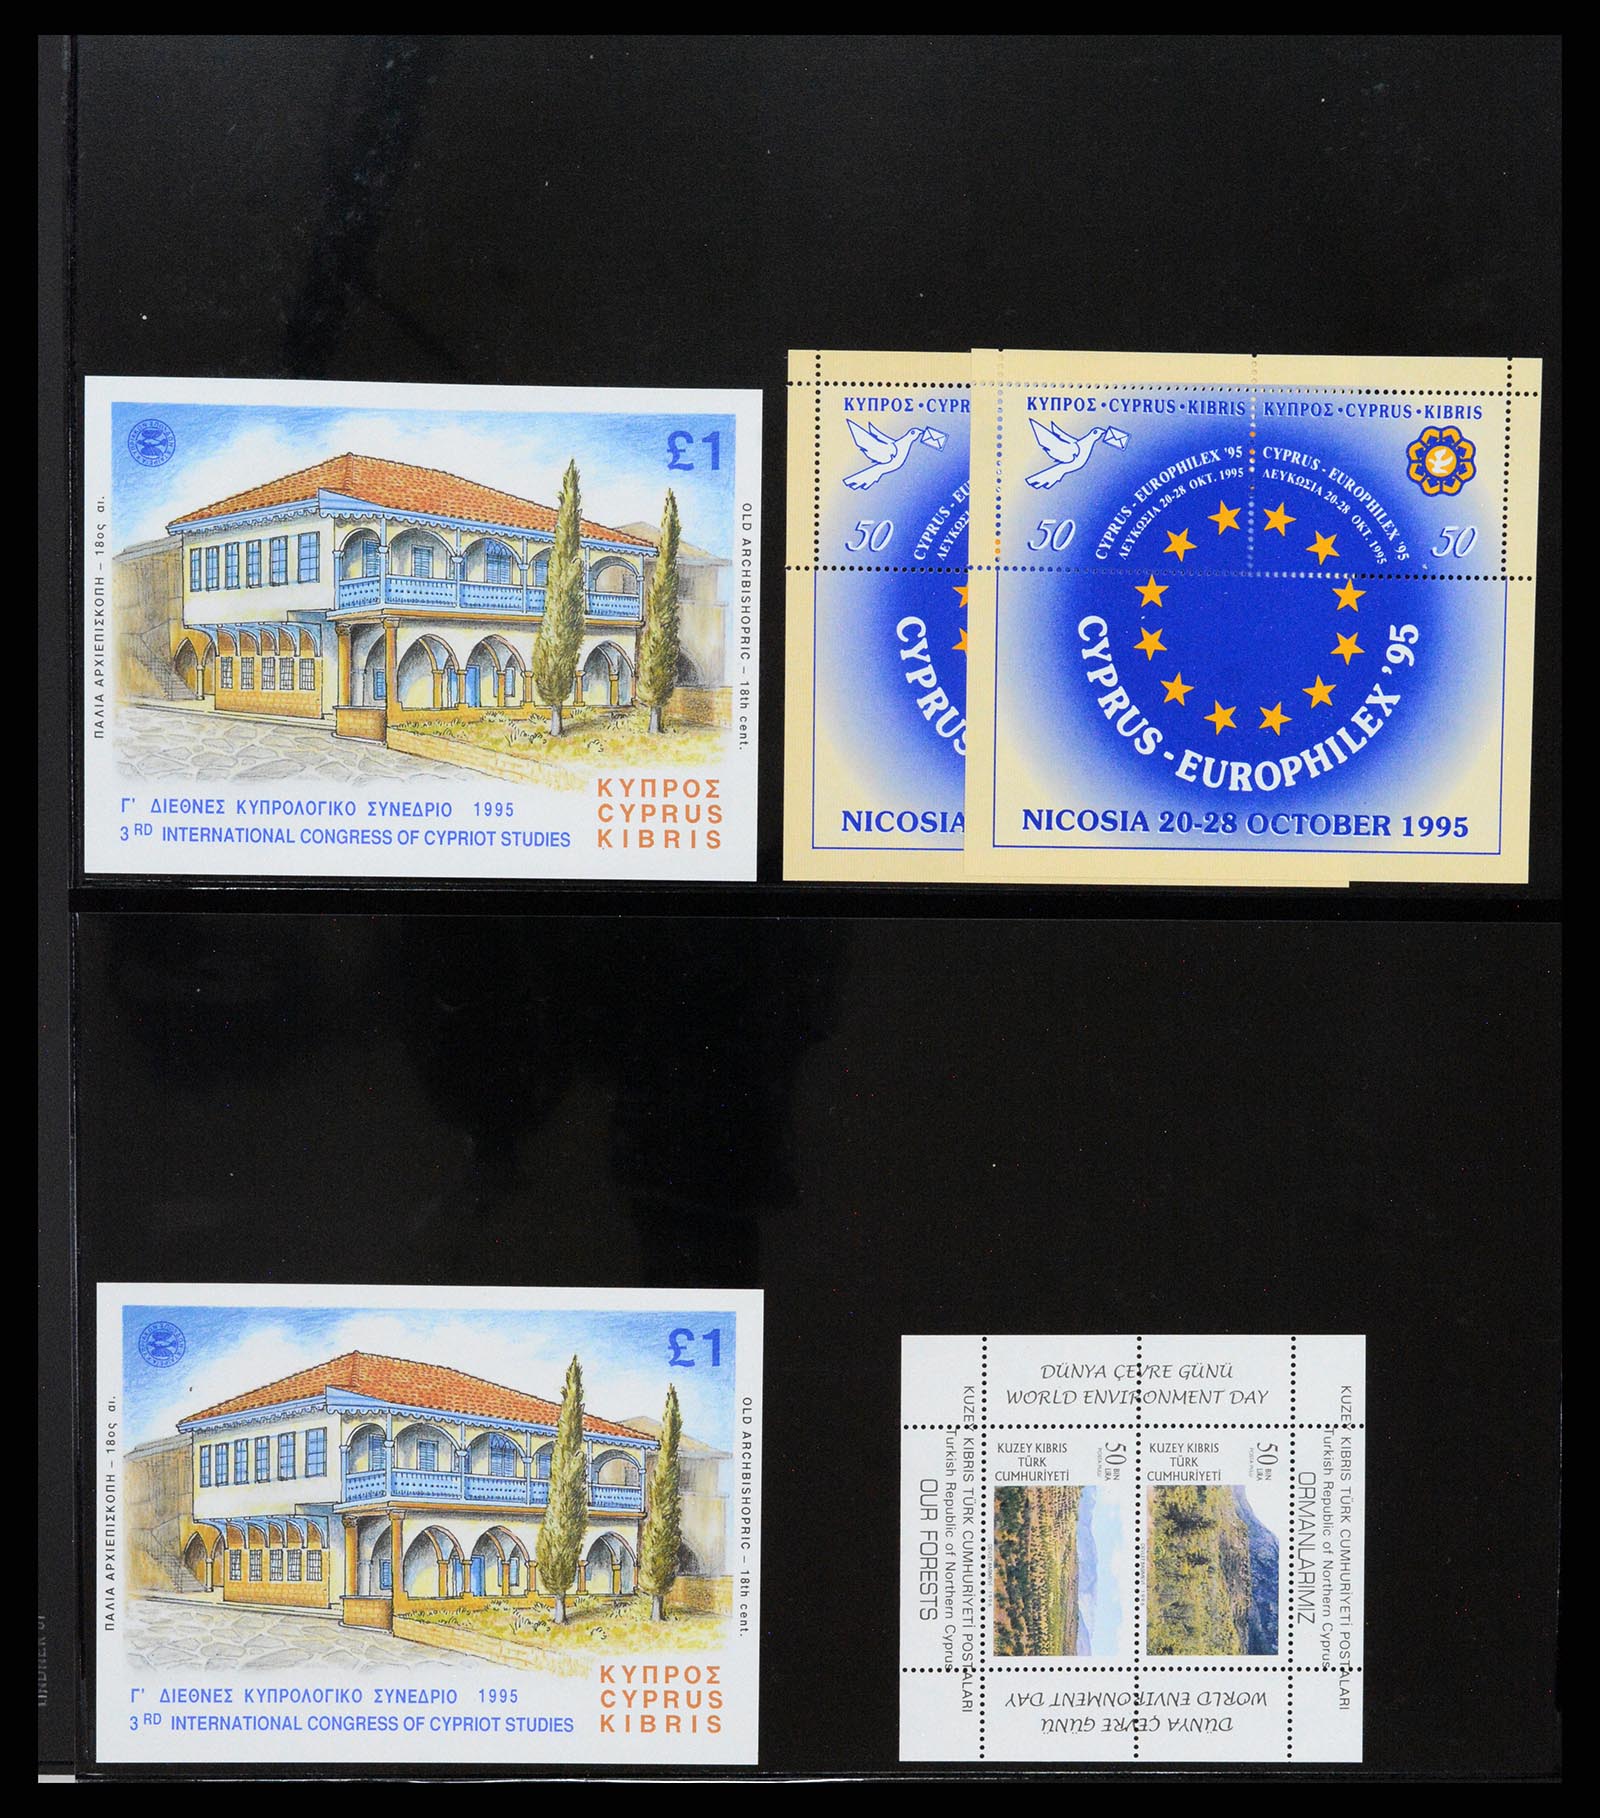 37345 017 - Stamp collection 37345 European countries souvenir sheets.